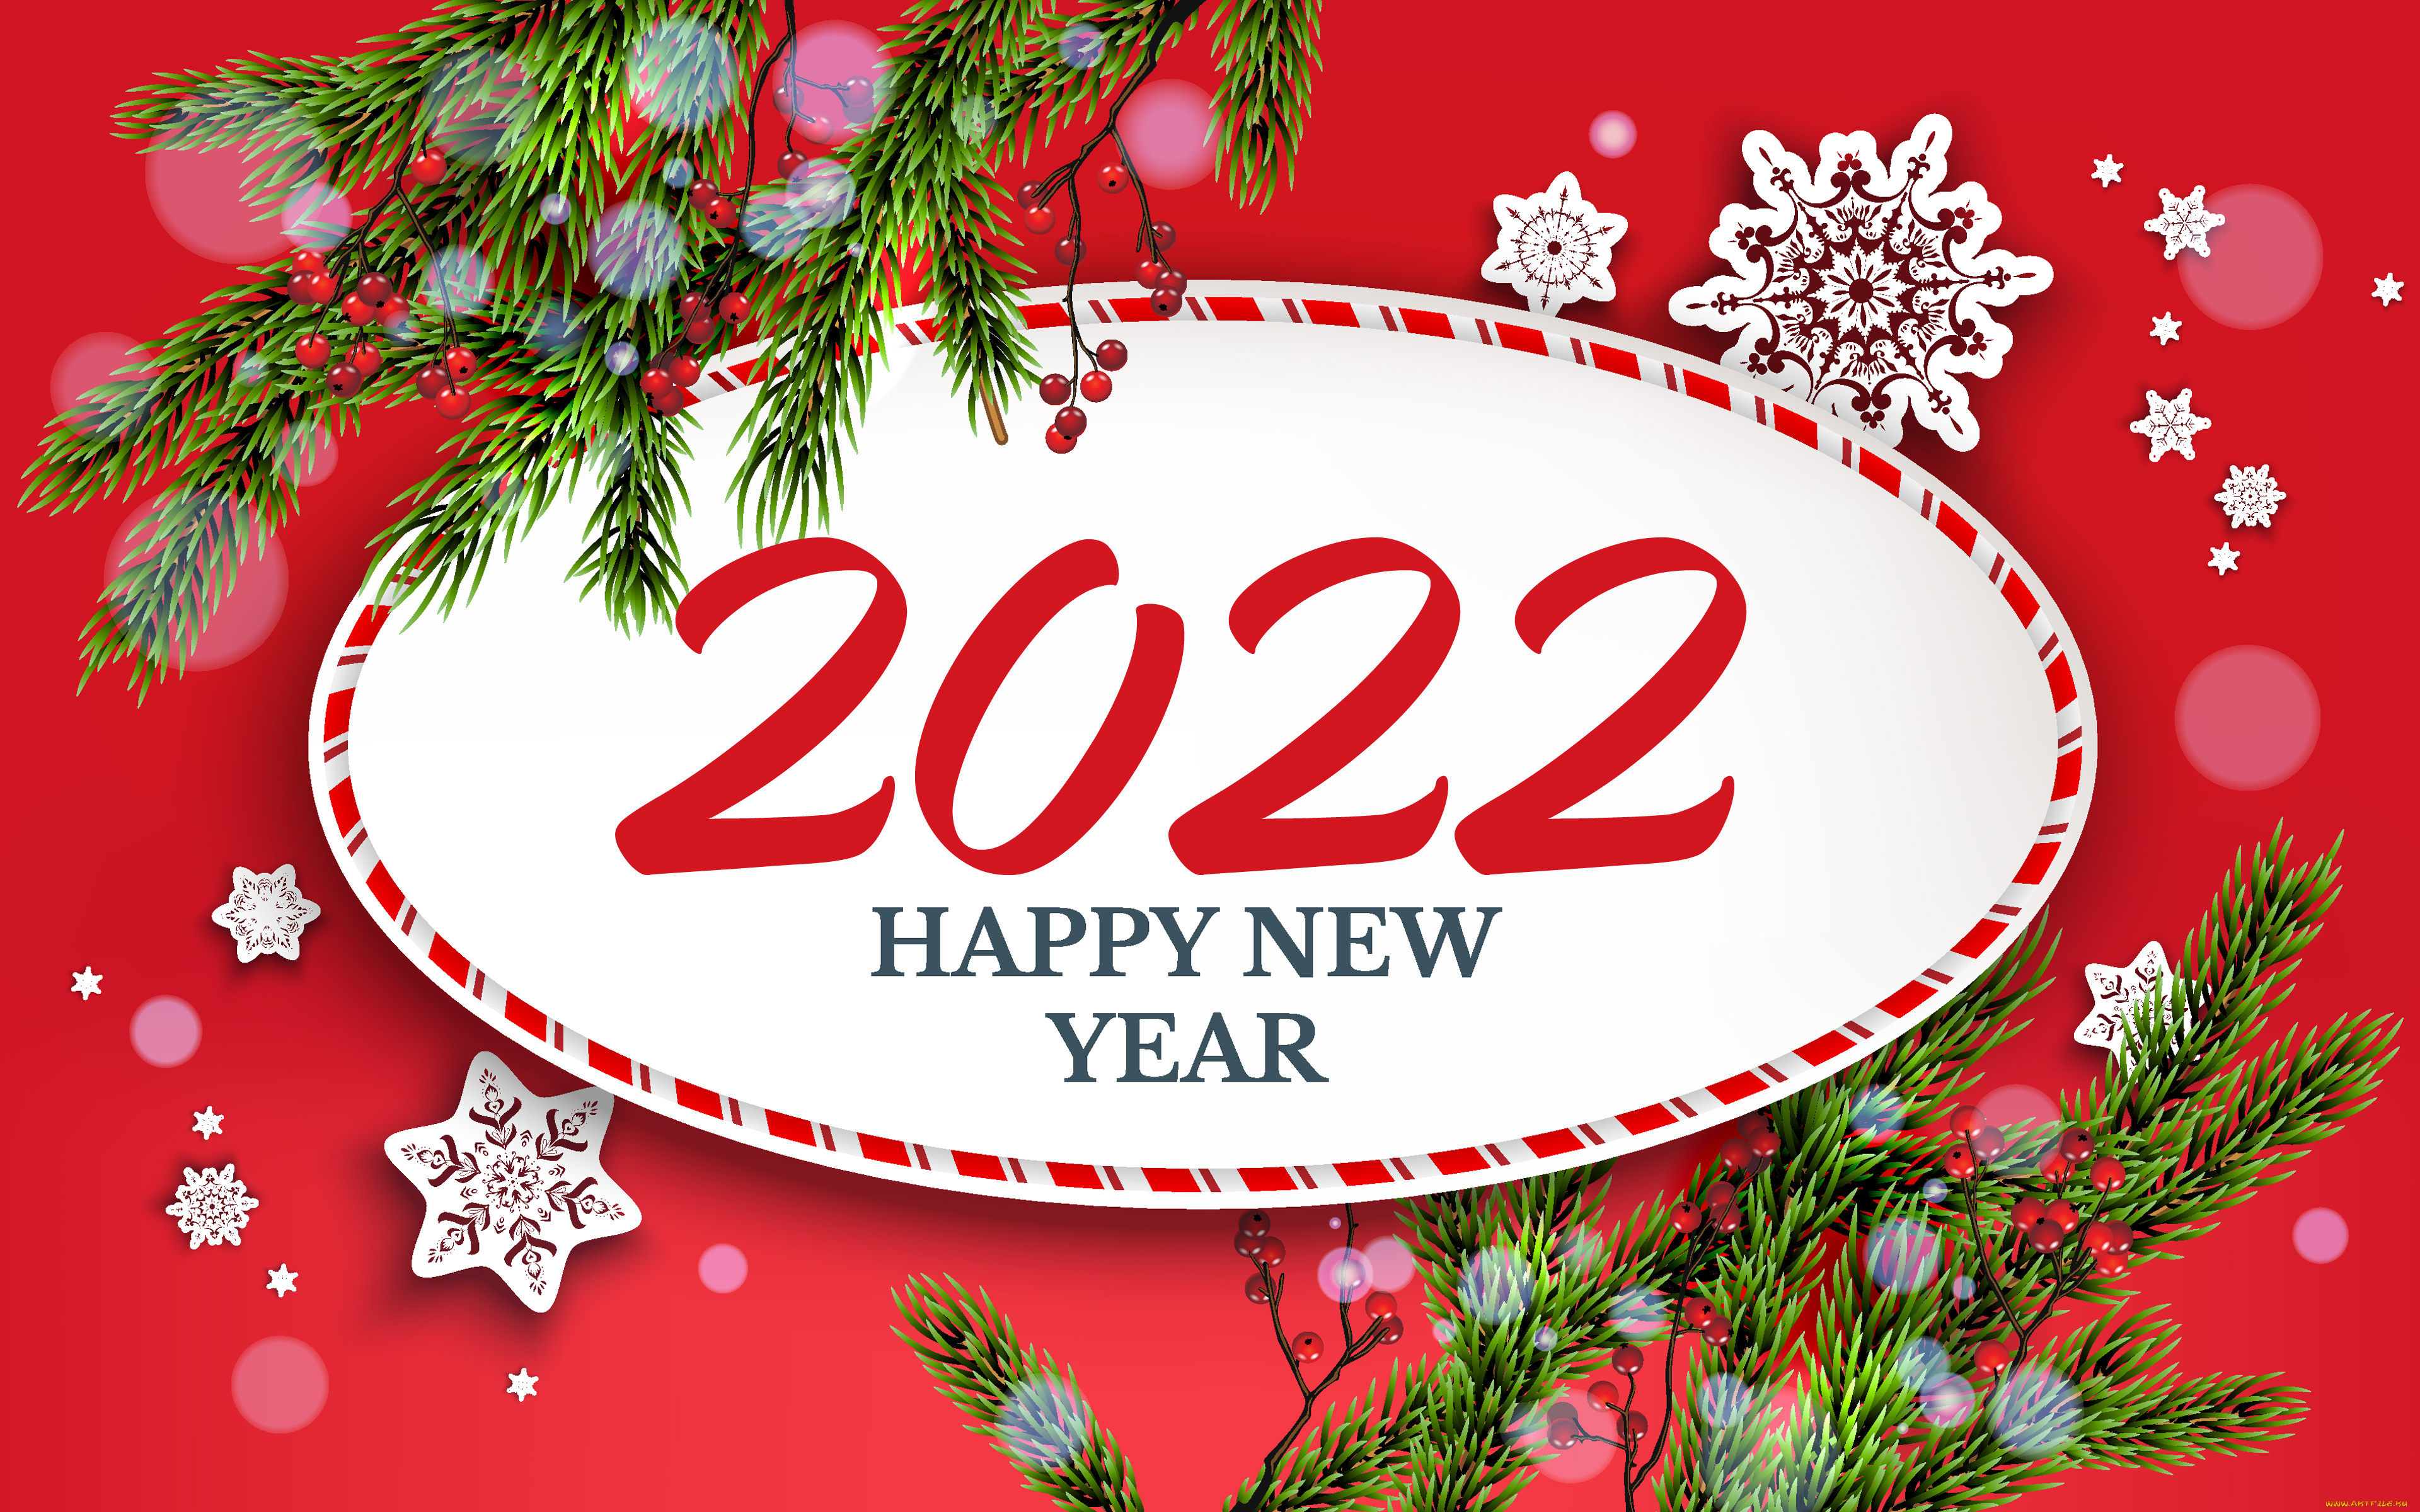 праздничные, 3д, графика, , новый, год, обои, для, рабочего, стола, с, новым, годом, 2022, 4k, красный, новогодний, фон, новый, год, концепции, новогодняя, рамка, елка